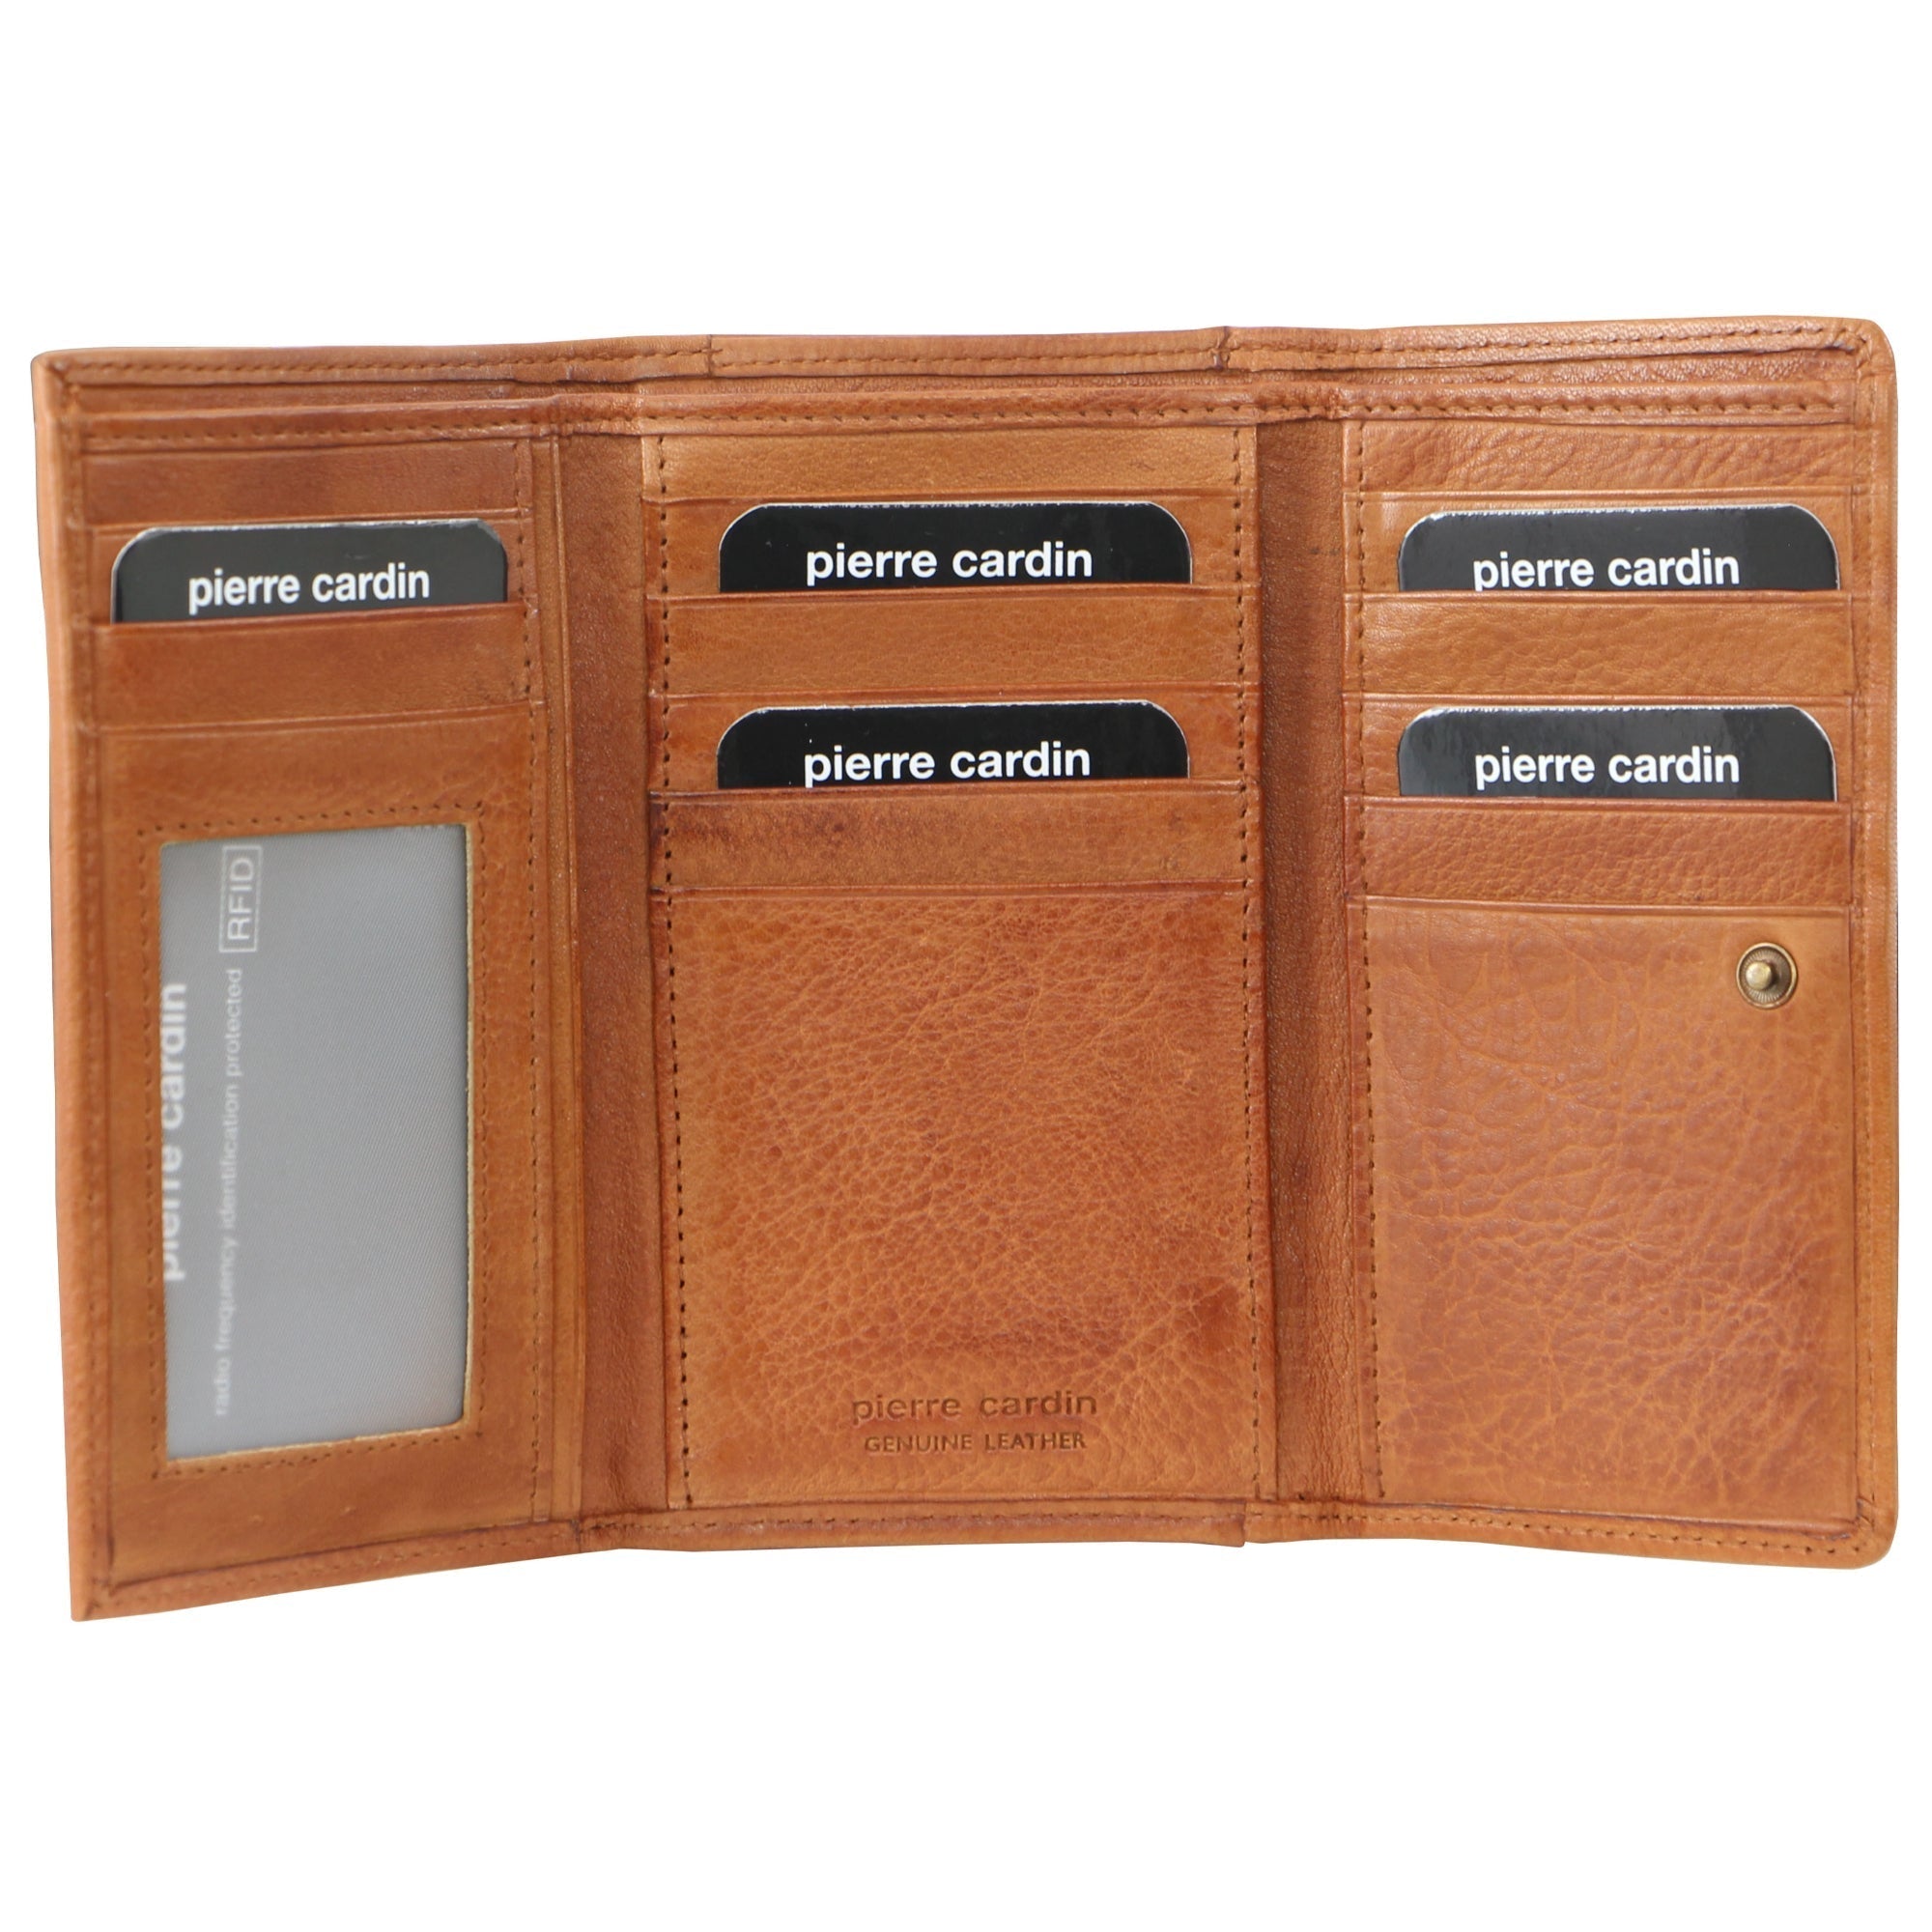 Pierre Cardin Leather Ladies Tri-Fold Wallet in Cognac